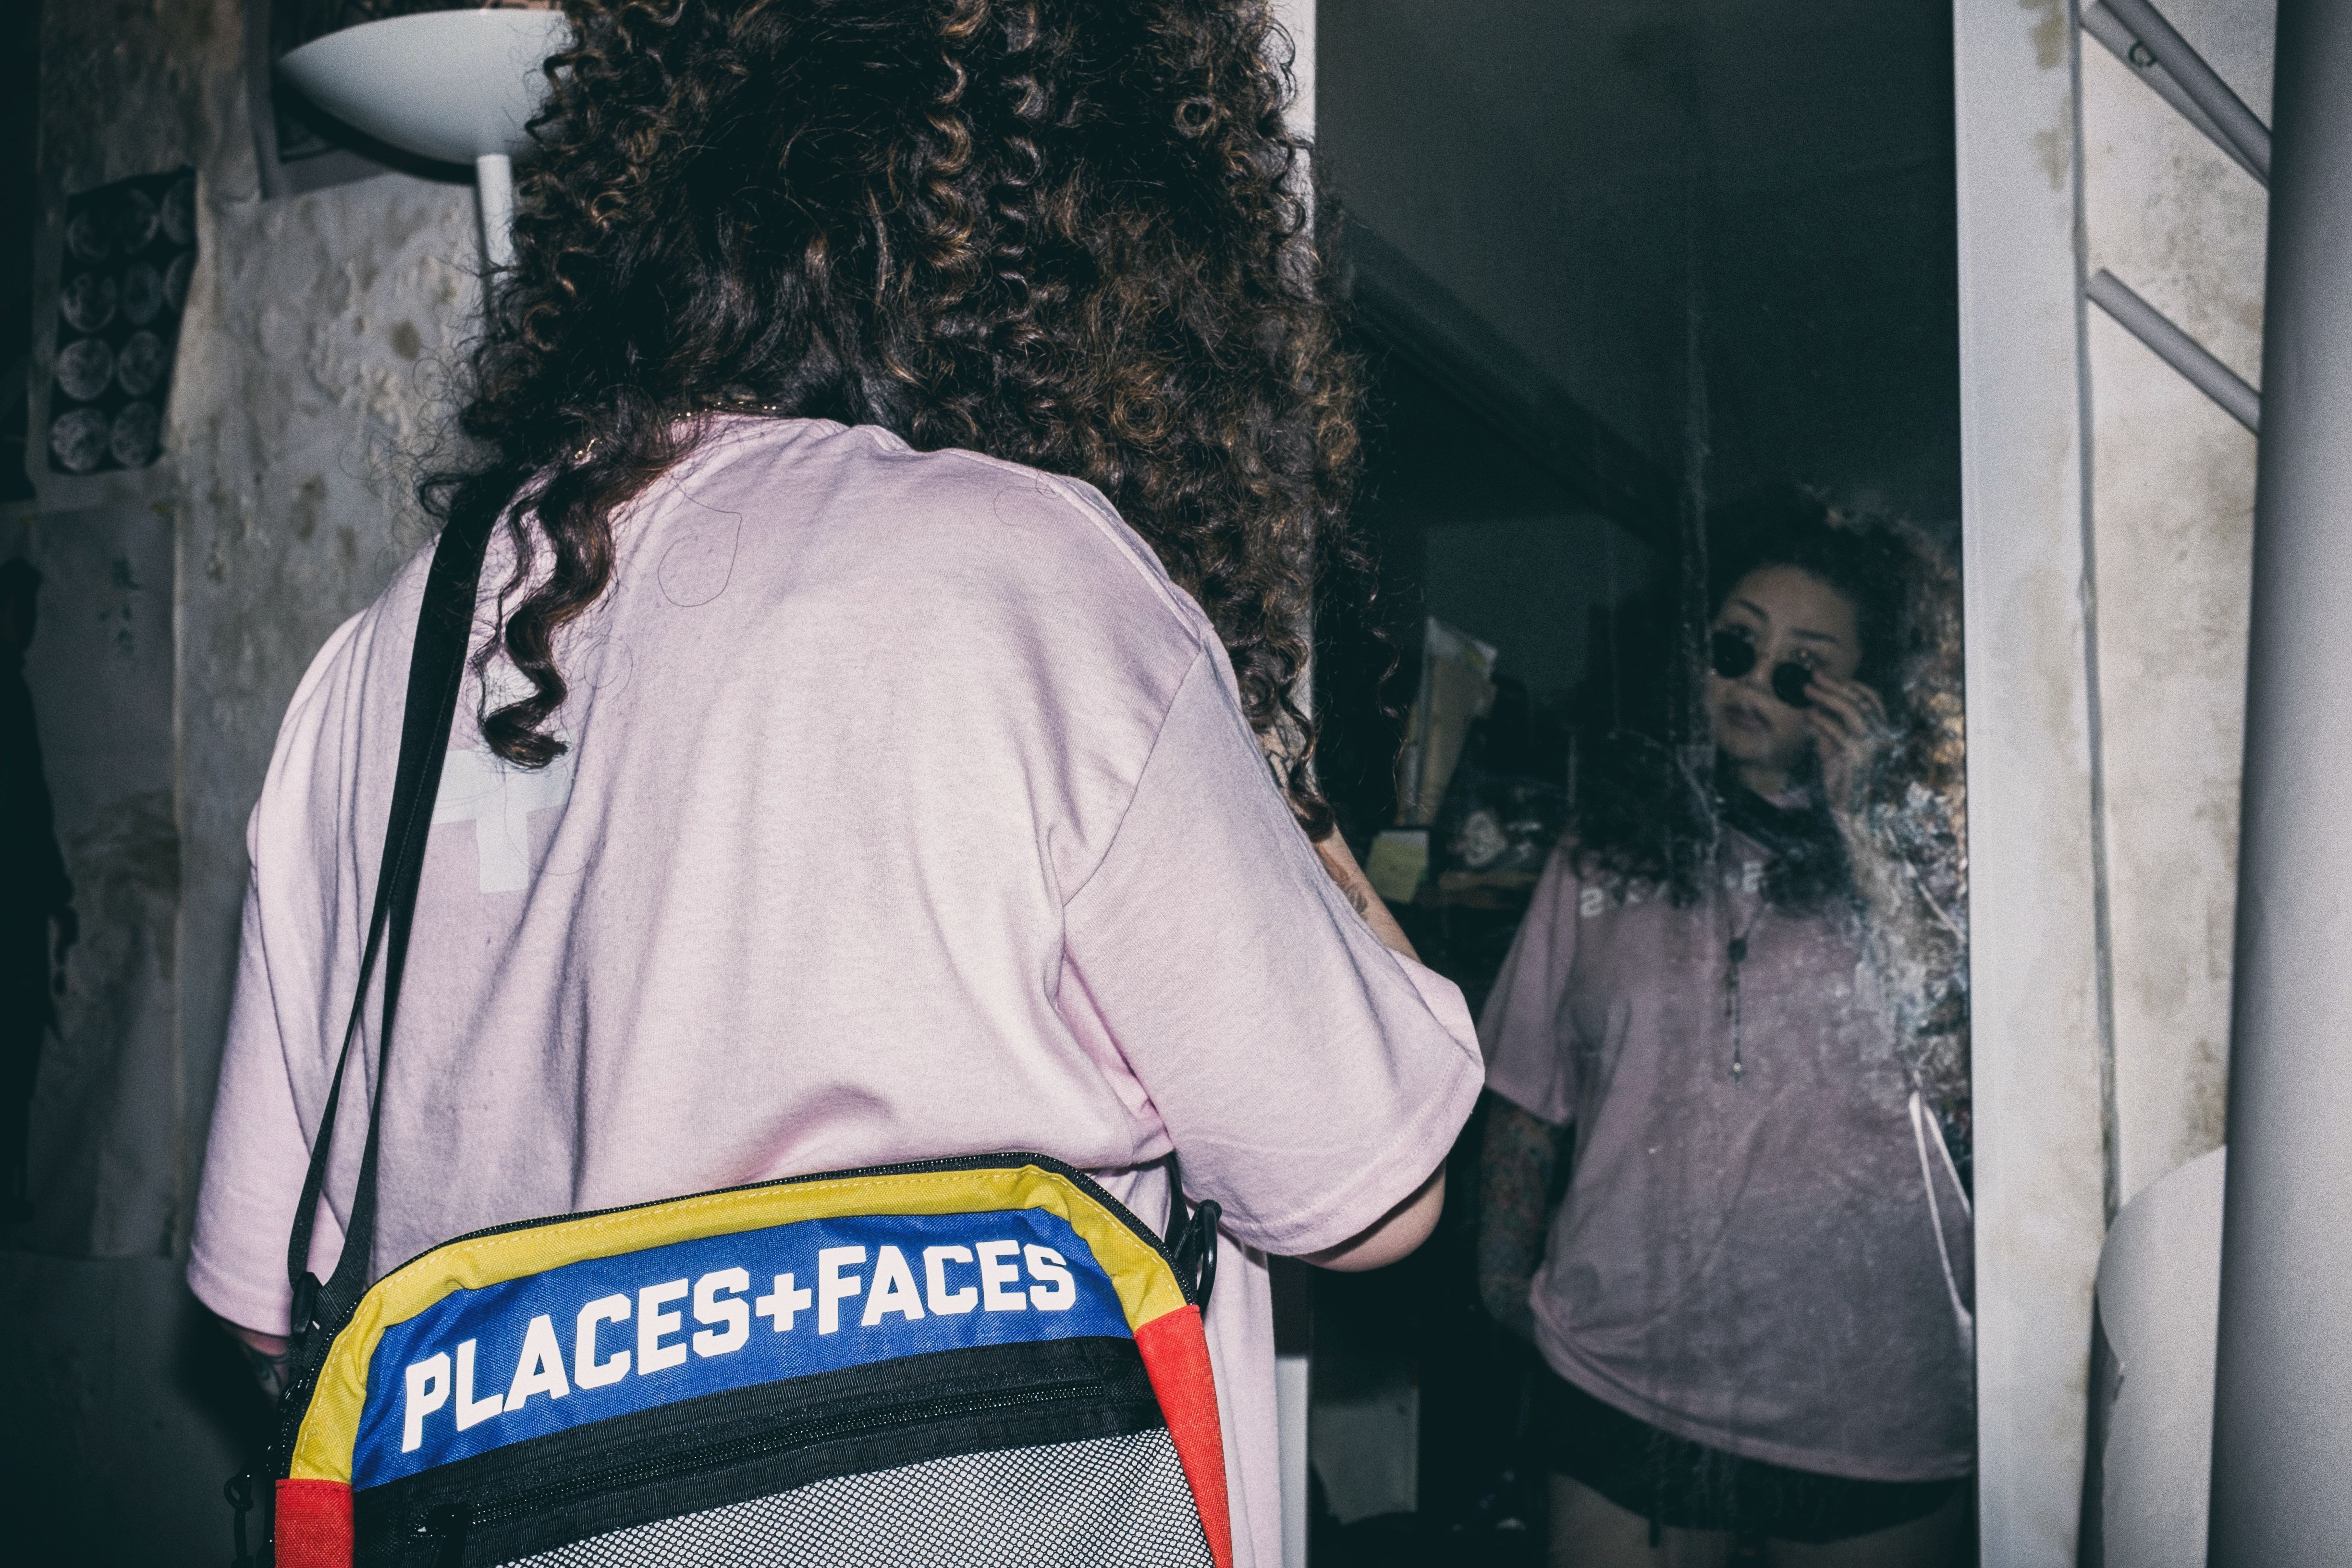 Places+Faces 將攜手 HBX 於香港開設 Pop-Up 店鋪